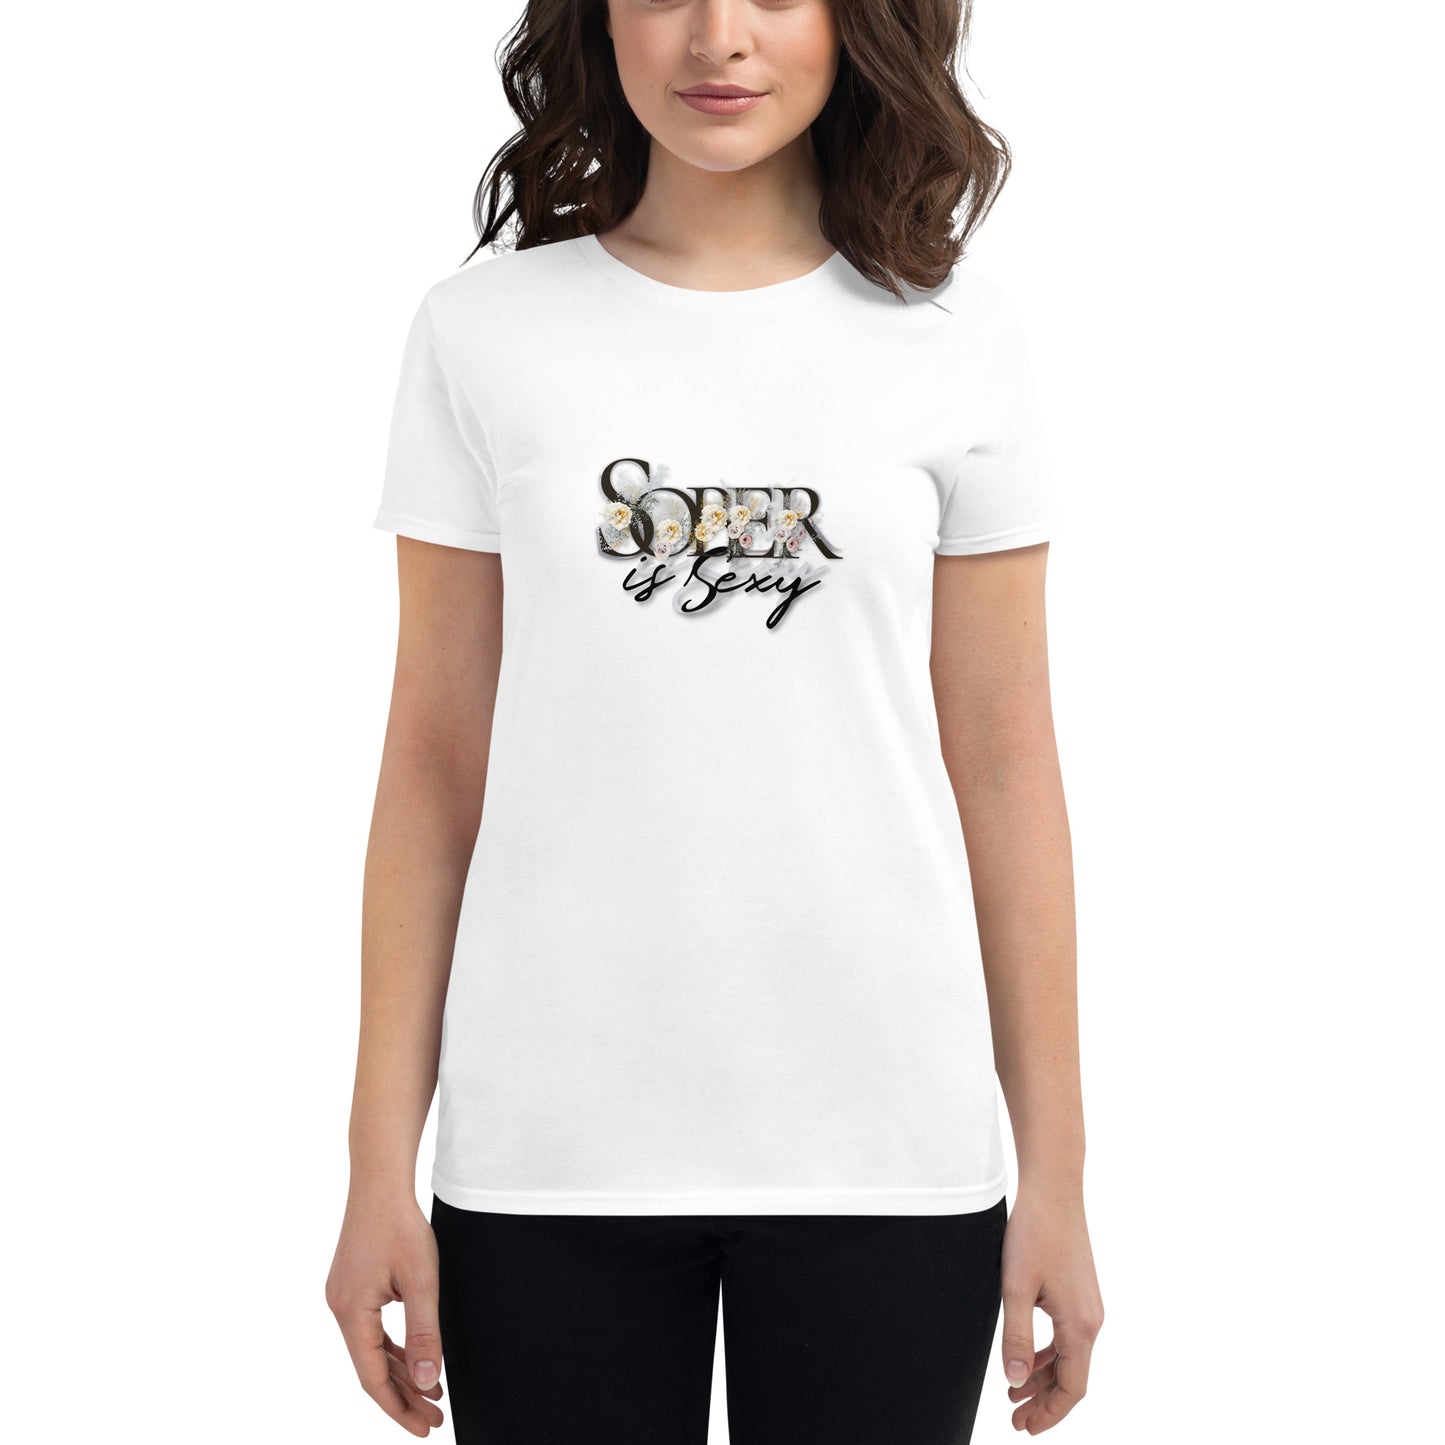 Sober is Sexy - Women's short sleeve t-shirt